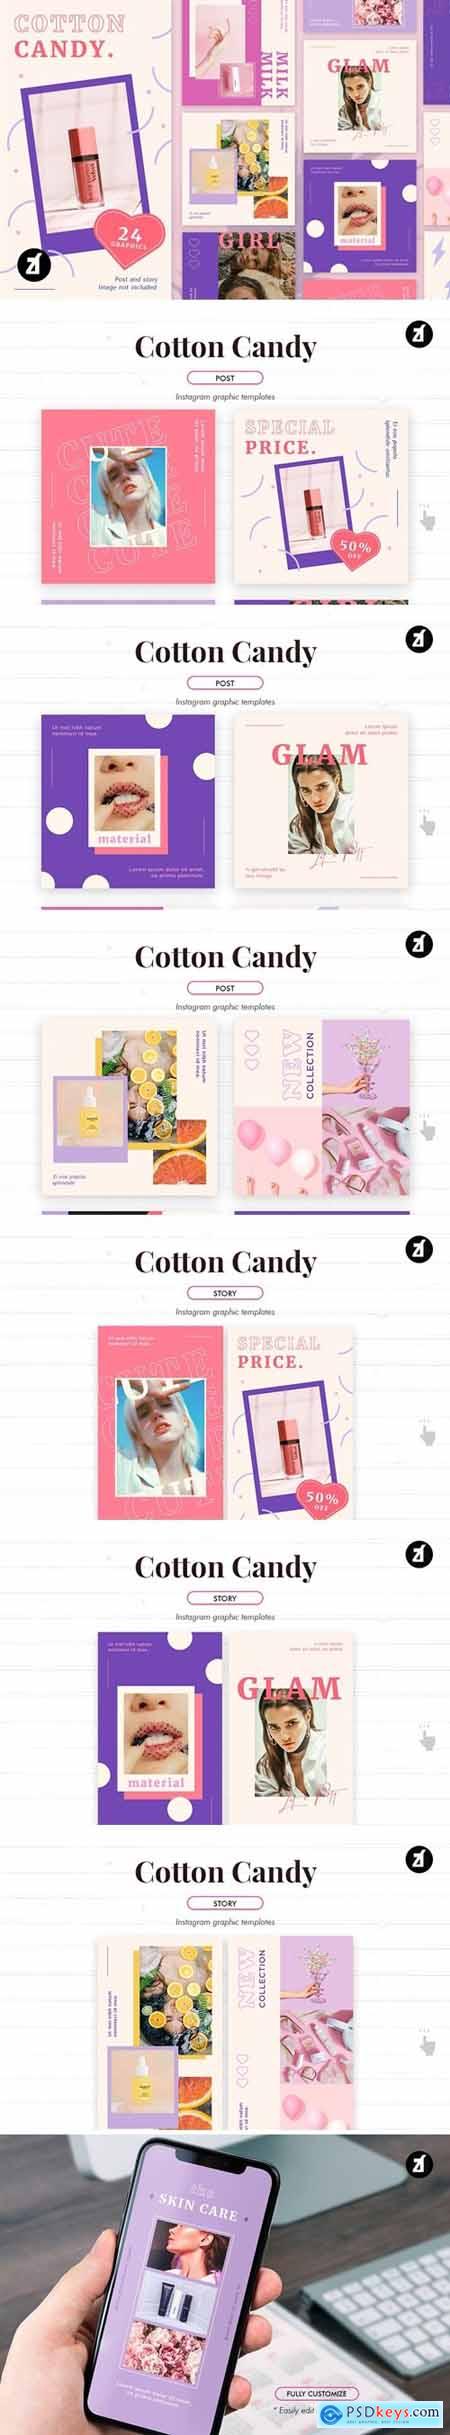 Cotton candy social media templates 3997691